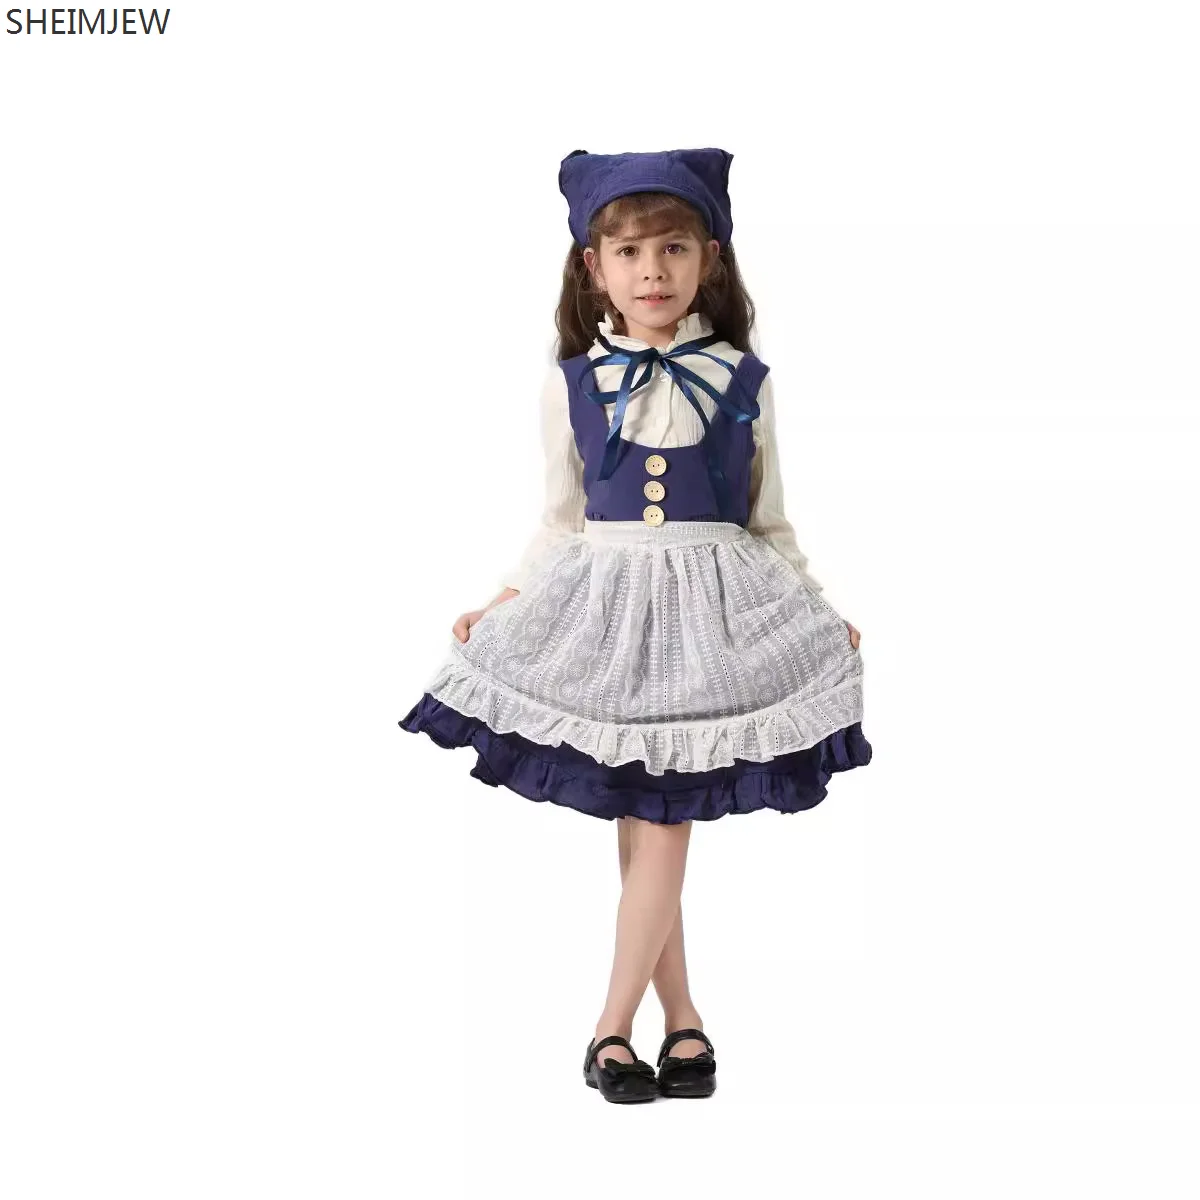 

Сказочная маленькая подходящая ко всему Одежда для косплея для девочек, детские костюмы Золушки для выступлений, карнавальные костюмы детской принцессы